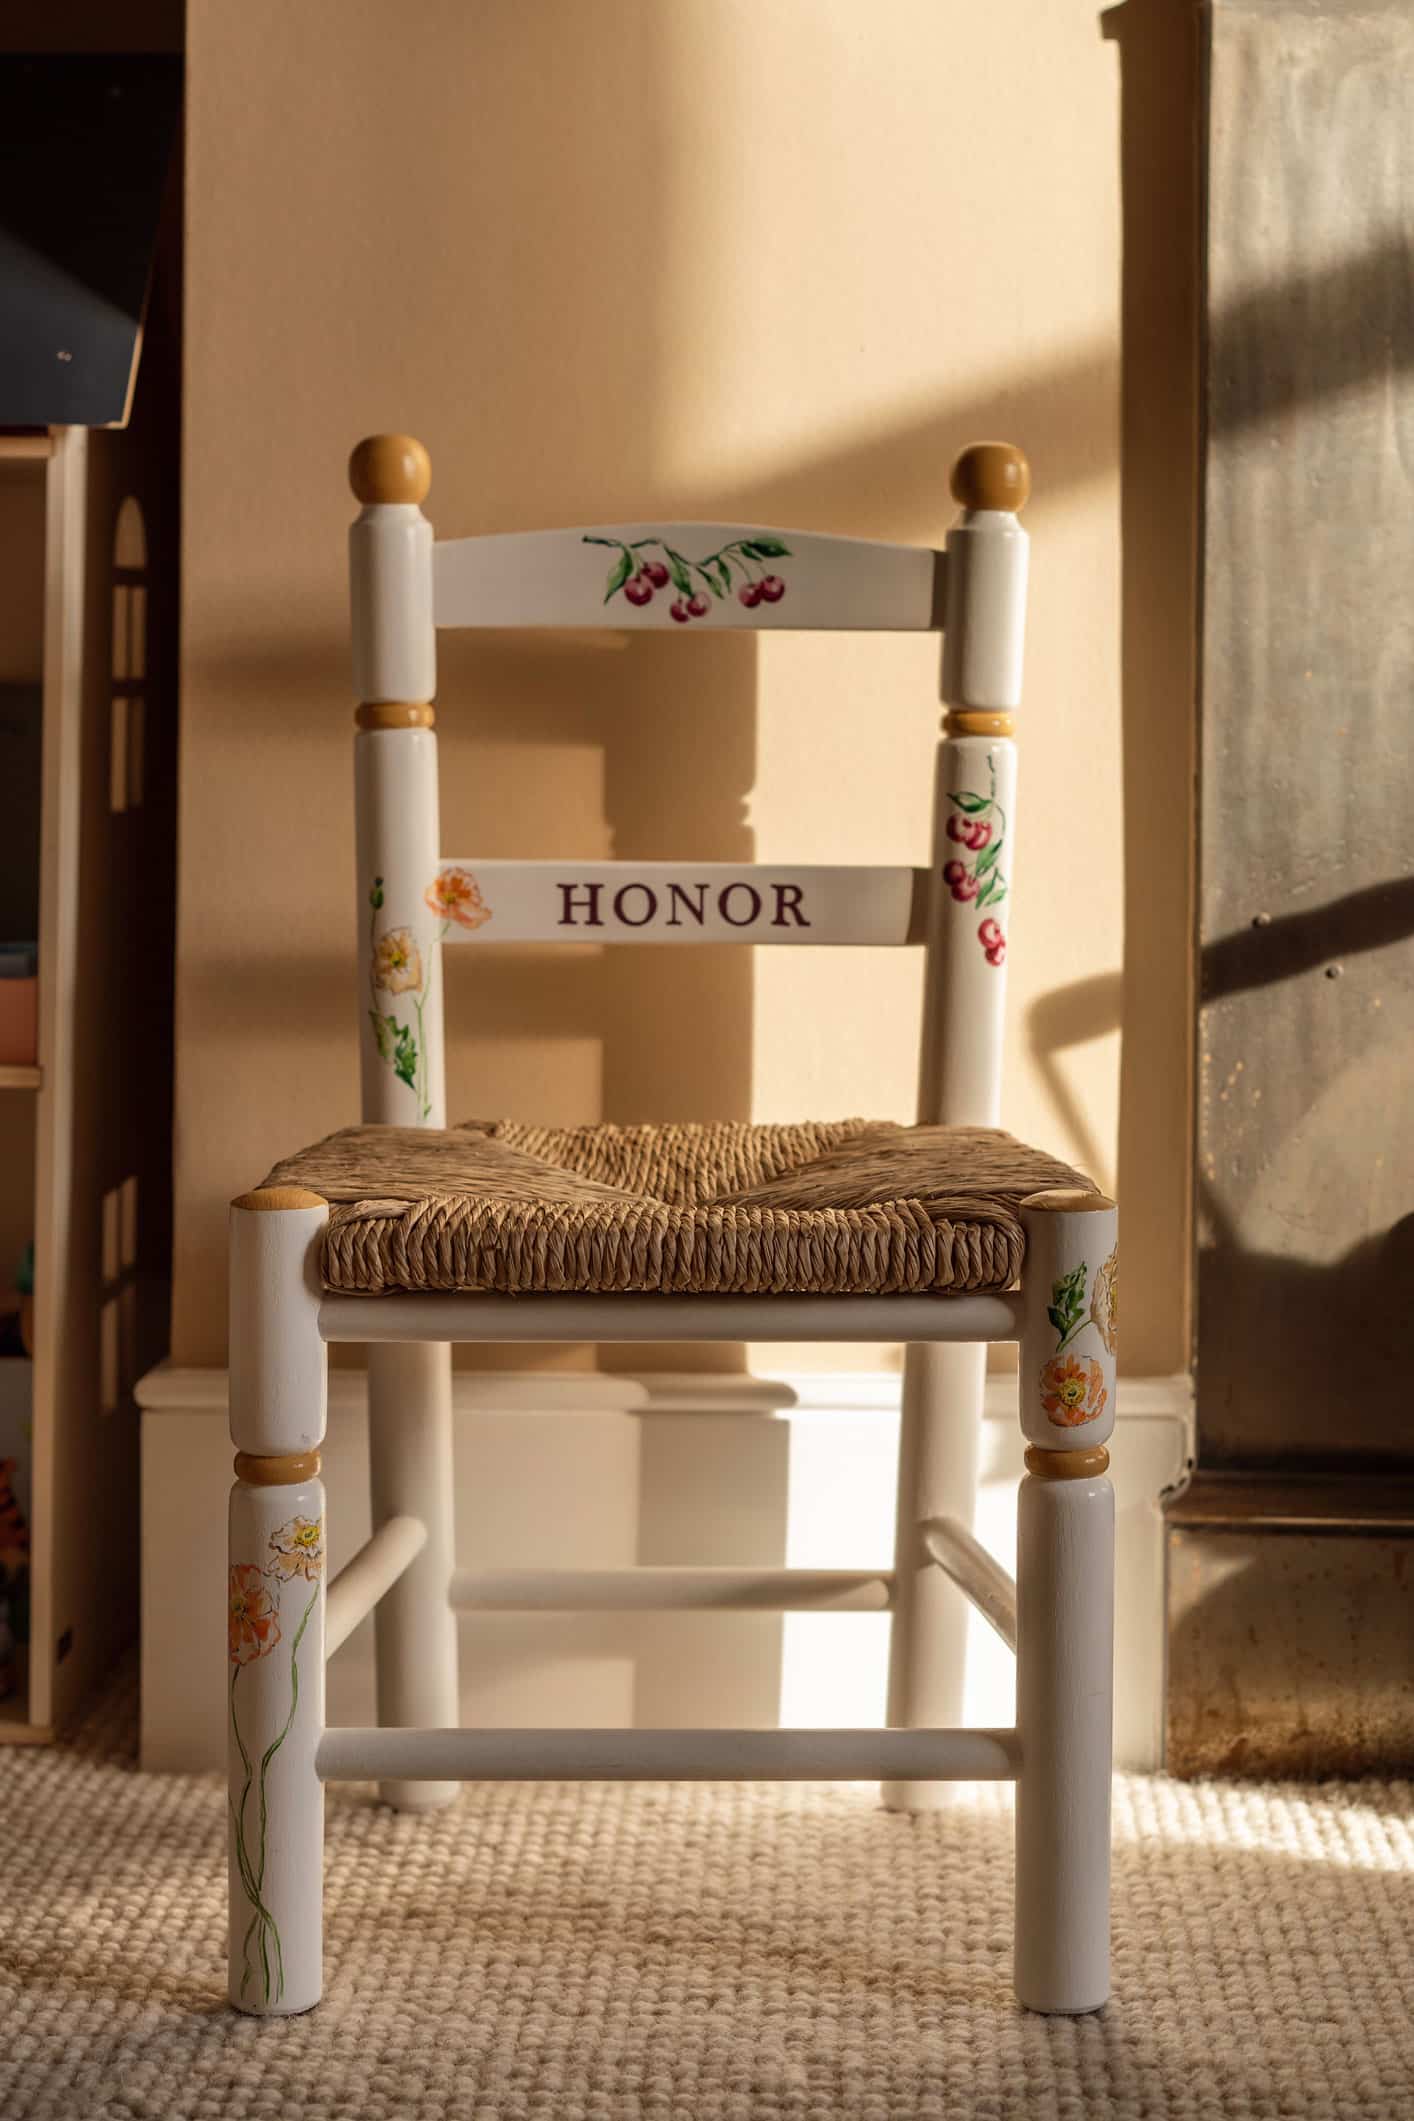 Honor and Ines bedroom nursery